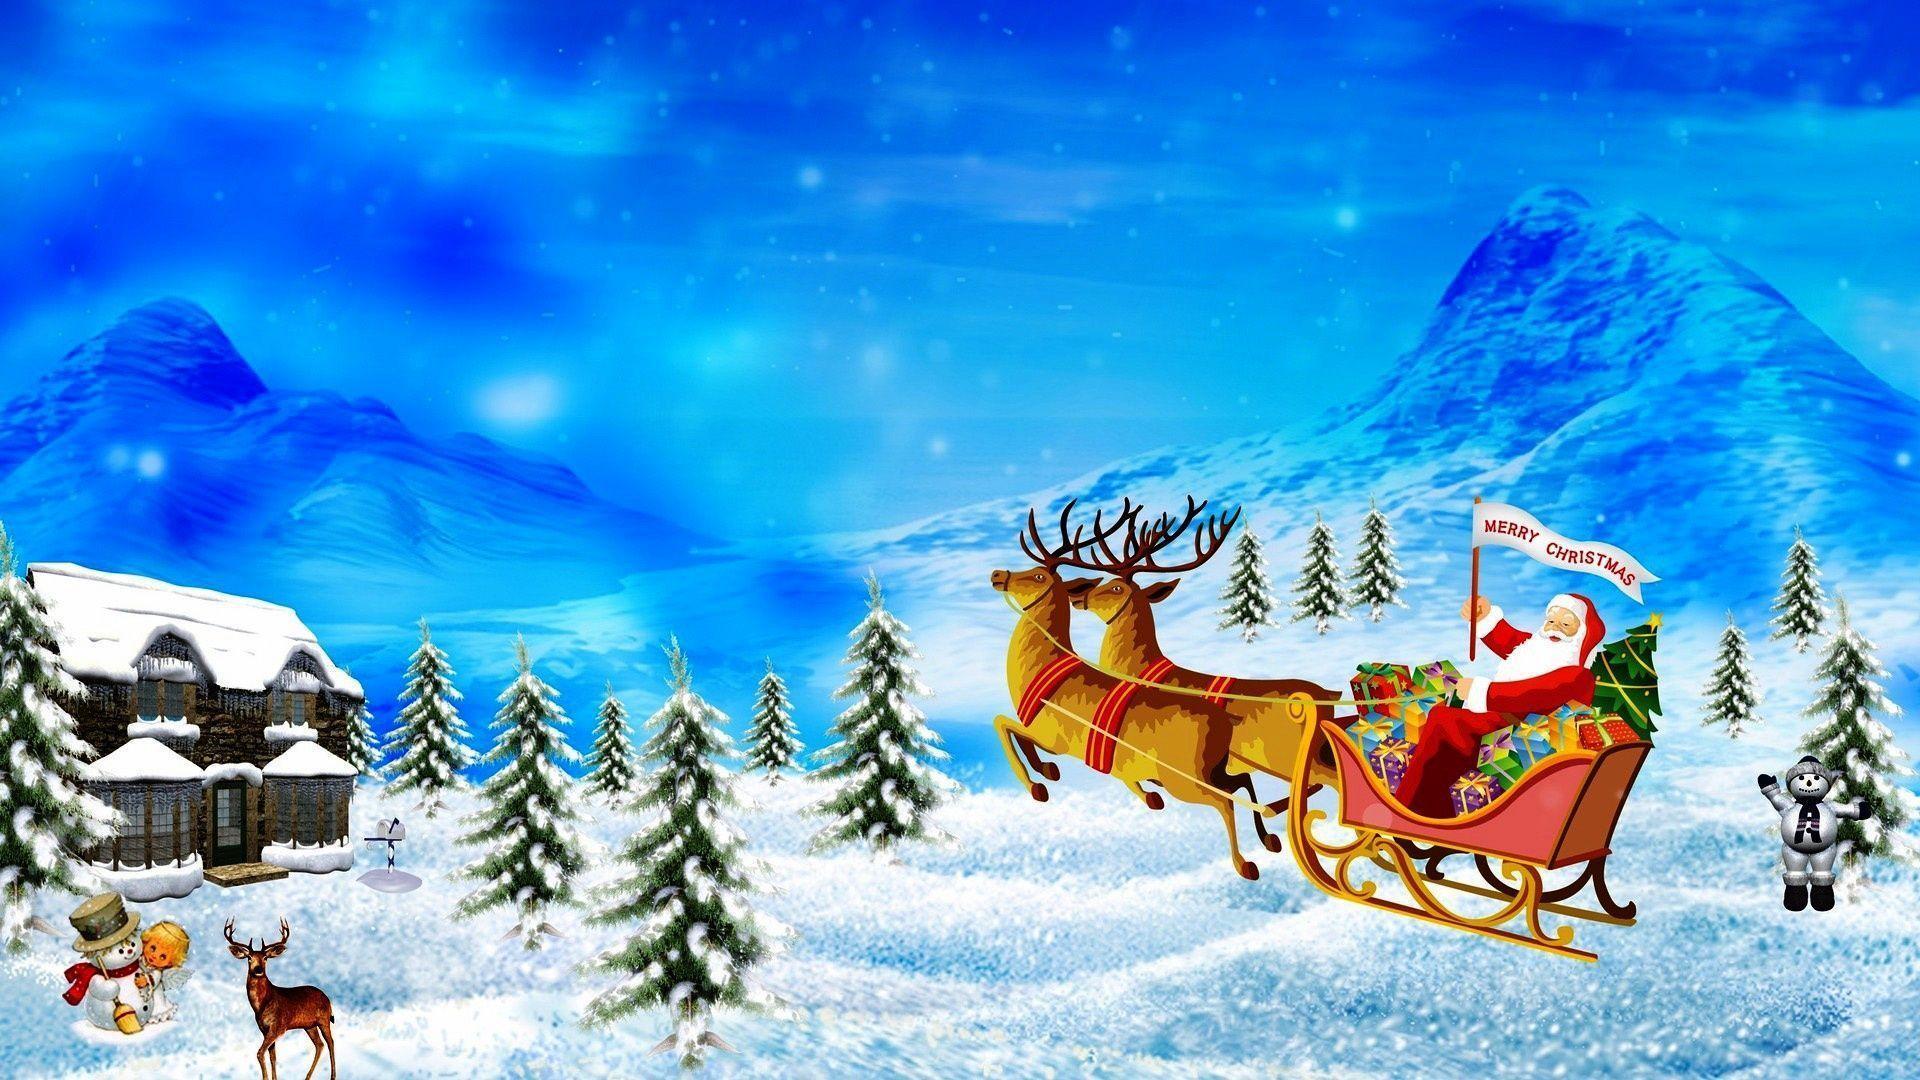 Best Christmas HD Wallpaper. Merry Christmas Wallpaper 2014